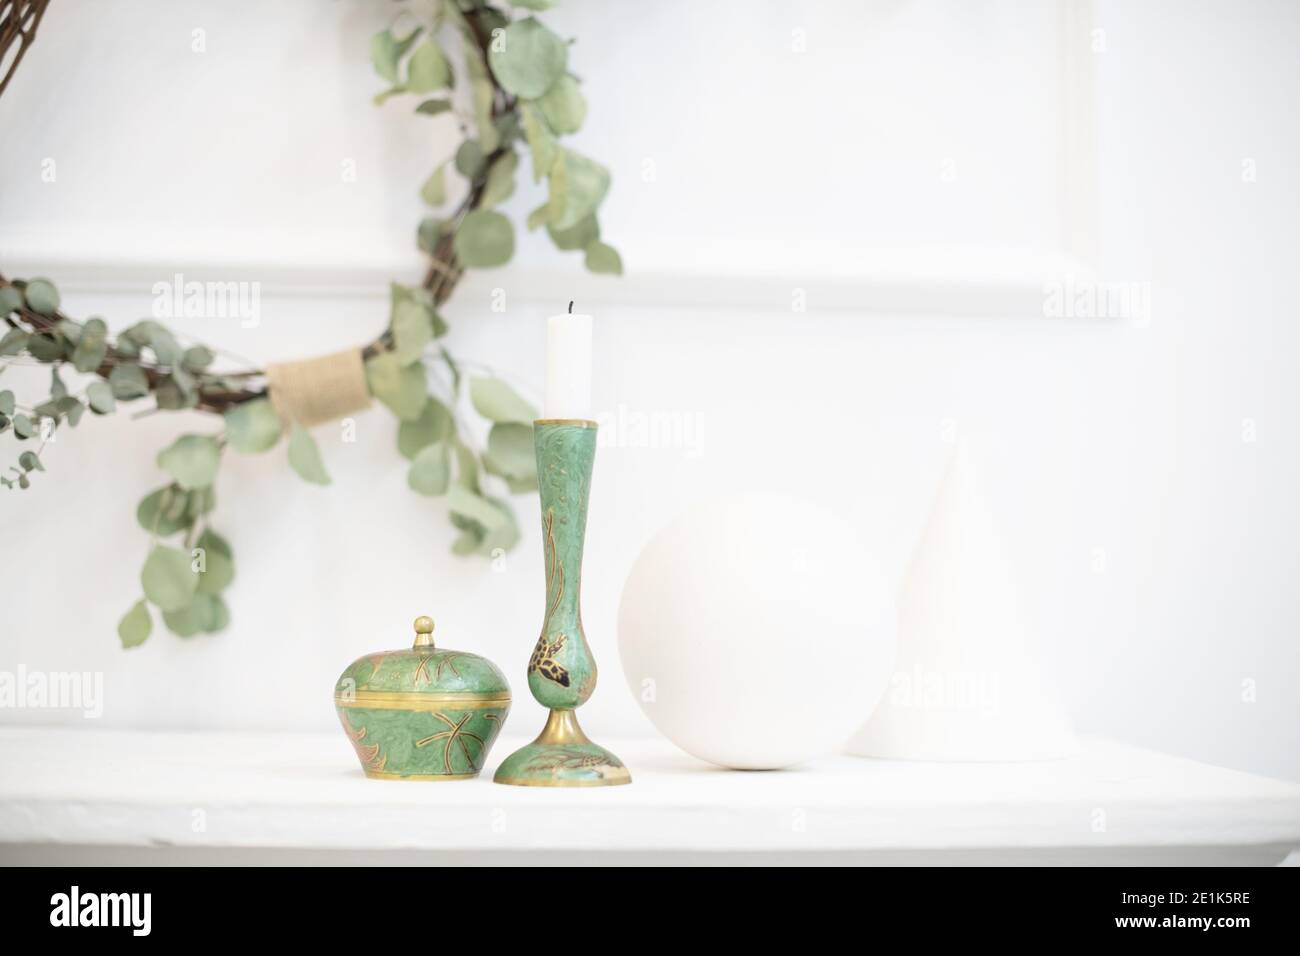 Une couronne d'eucalyptus à l'intérieur. Design japonais combiné au minimalisme scandinave dans une maison lumineuse moderne - Japandi. Décor apaisant Banque D'Images